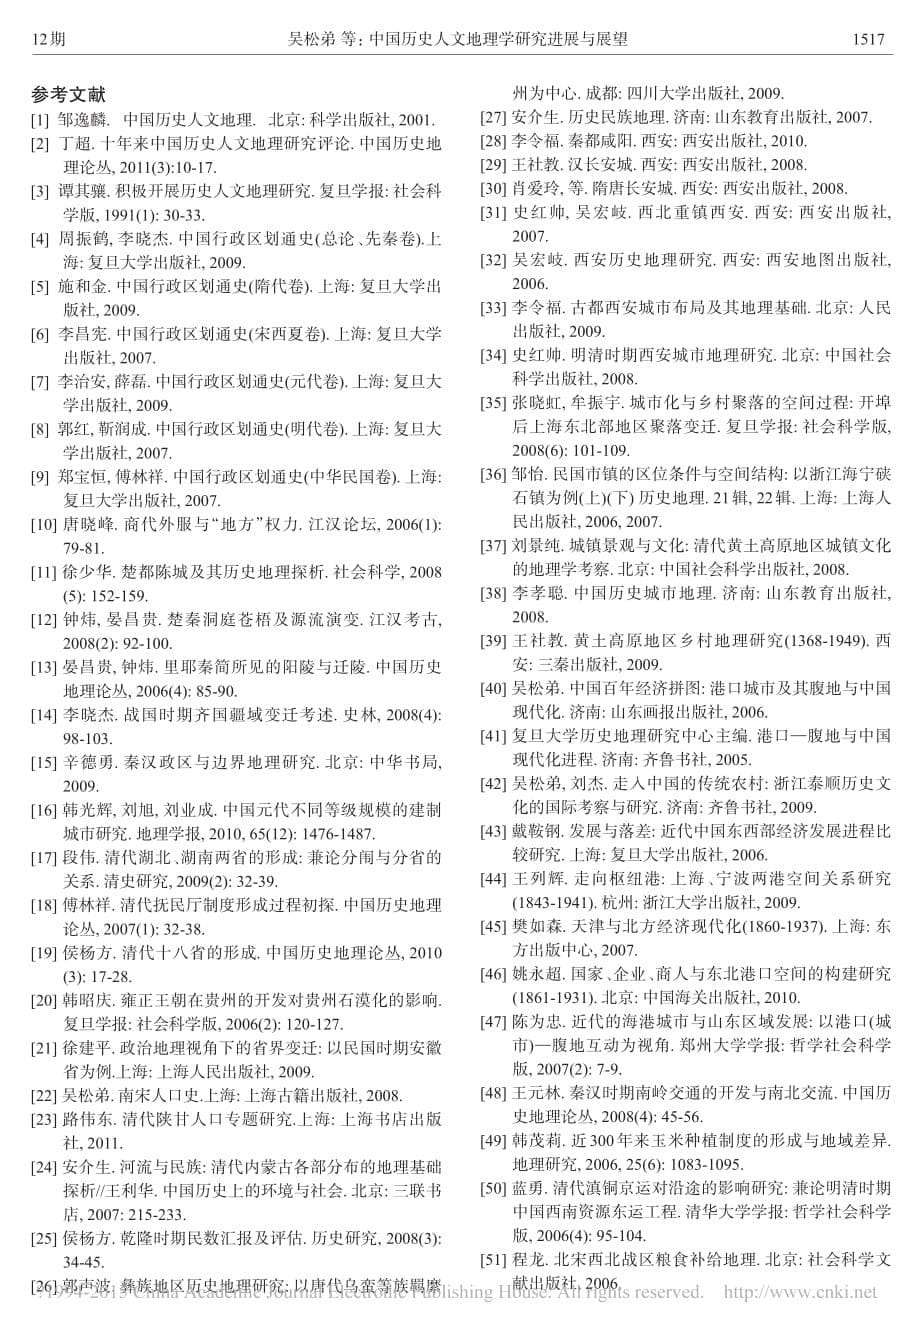 中国历史人文地理学研究进展与展望_吴松弟_第5页